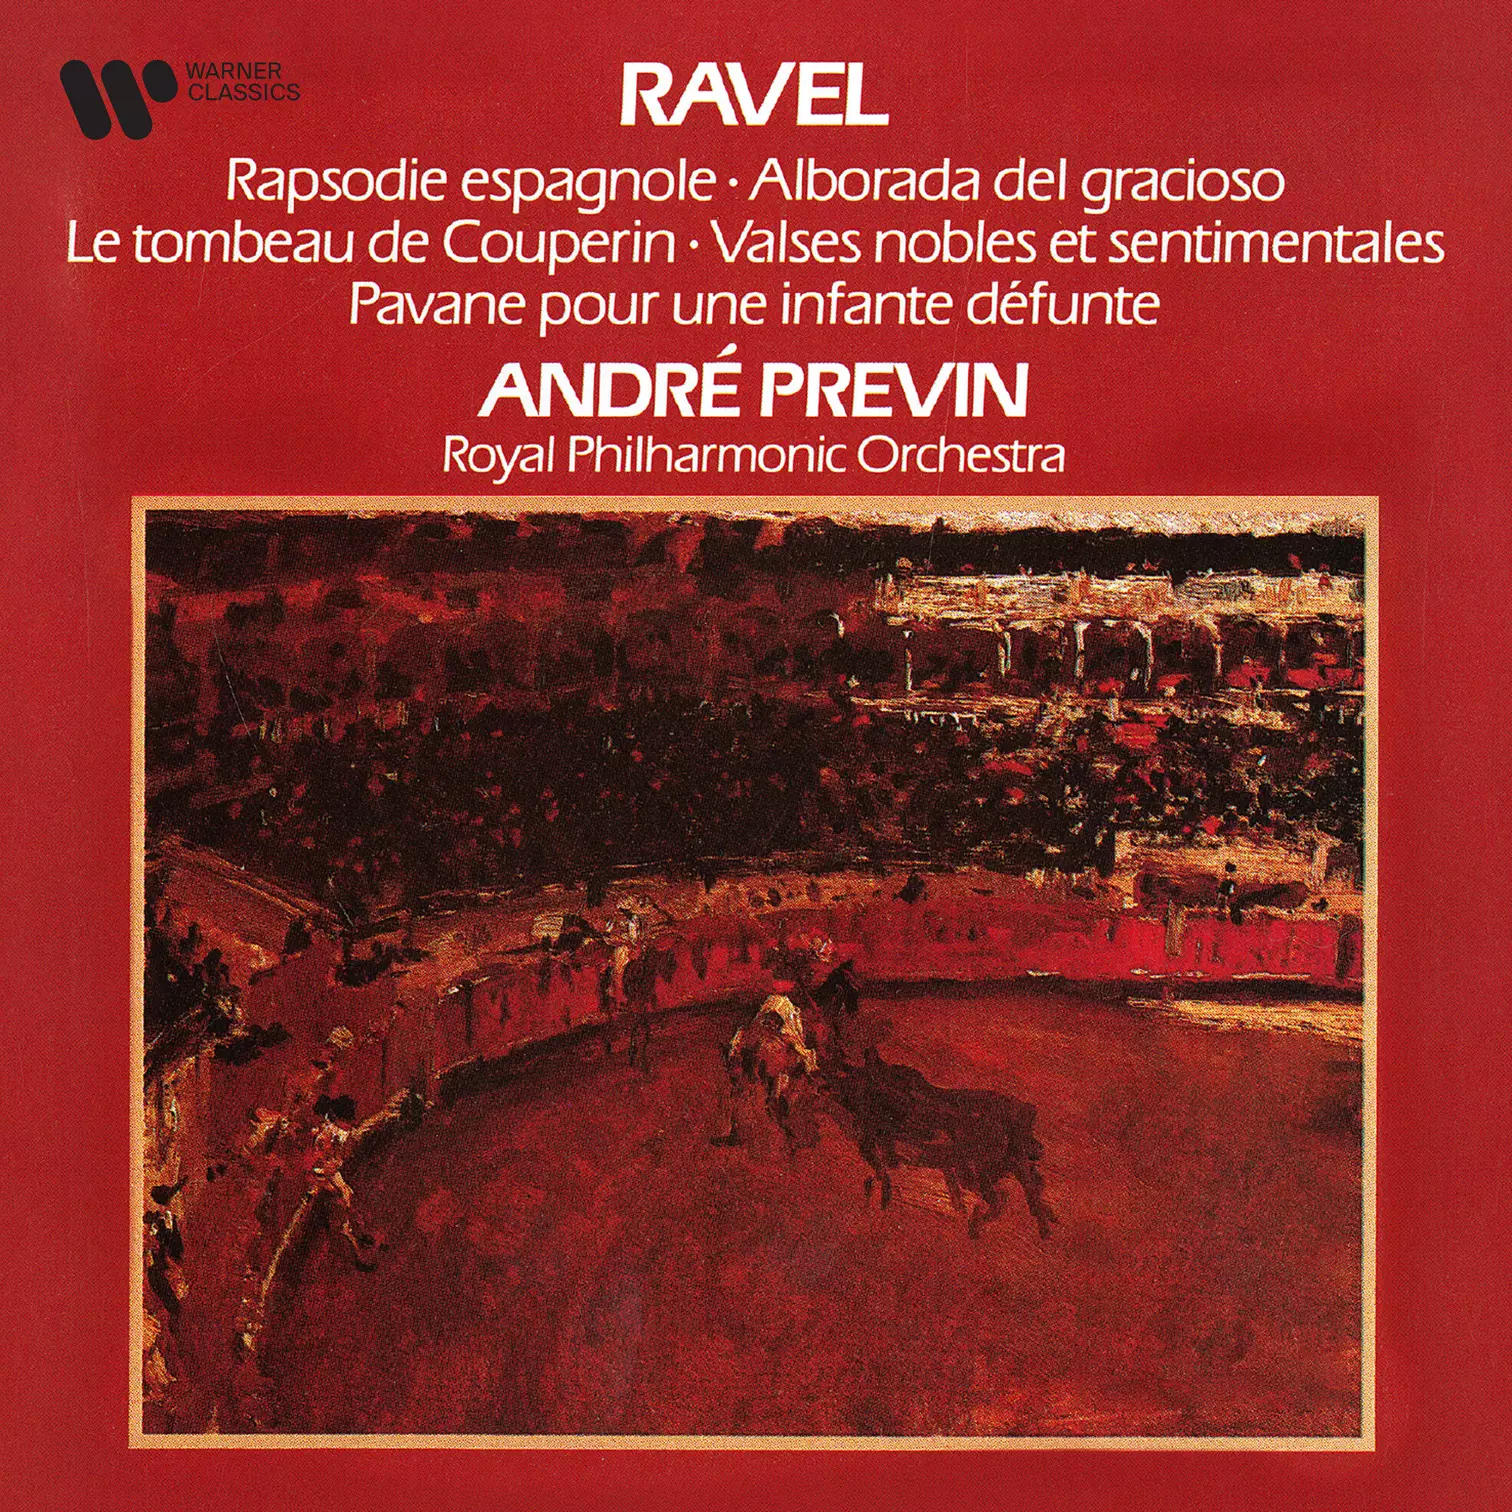 Ravel: Rapsodie espagnole, Le tombeau de Couperin, Valses nobles et sentimentales & Pavane pour une infante défunte